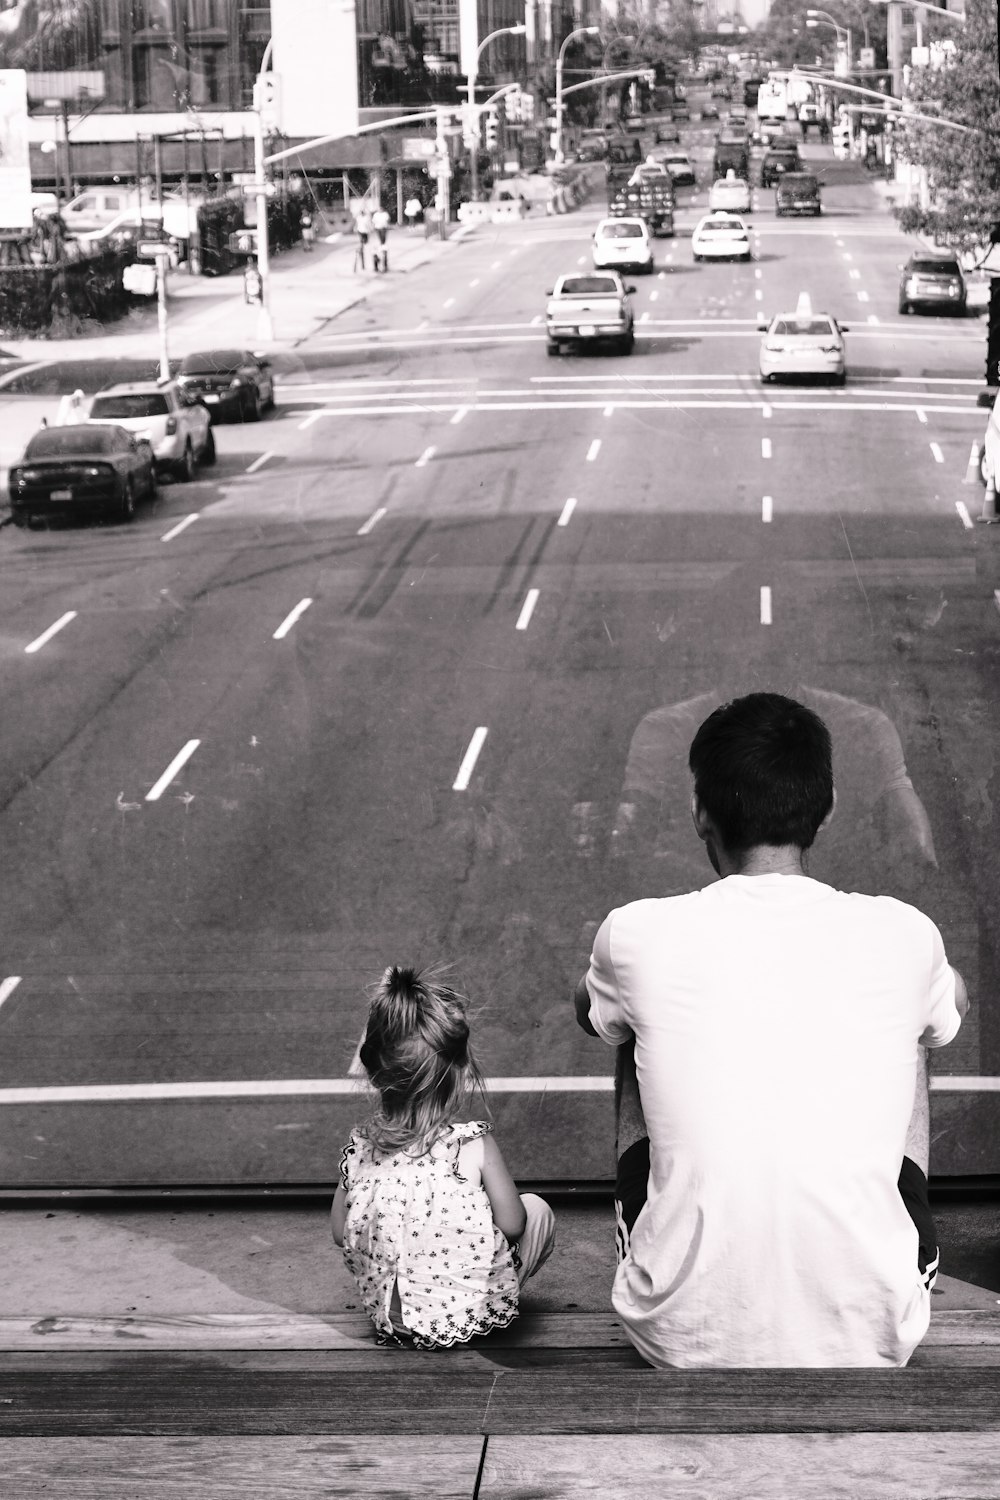 Photographie en niveaux de gris d’un homme et d’une fille assis sur un escalier donnant sur la route avec des voitures qui passent